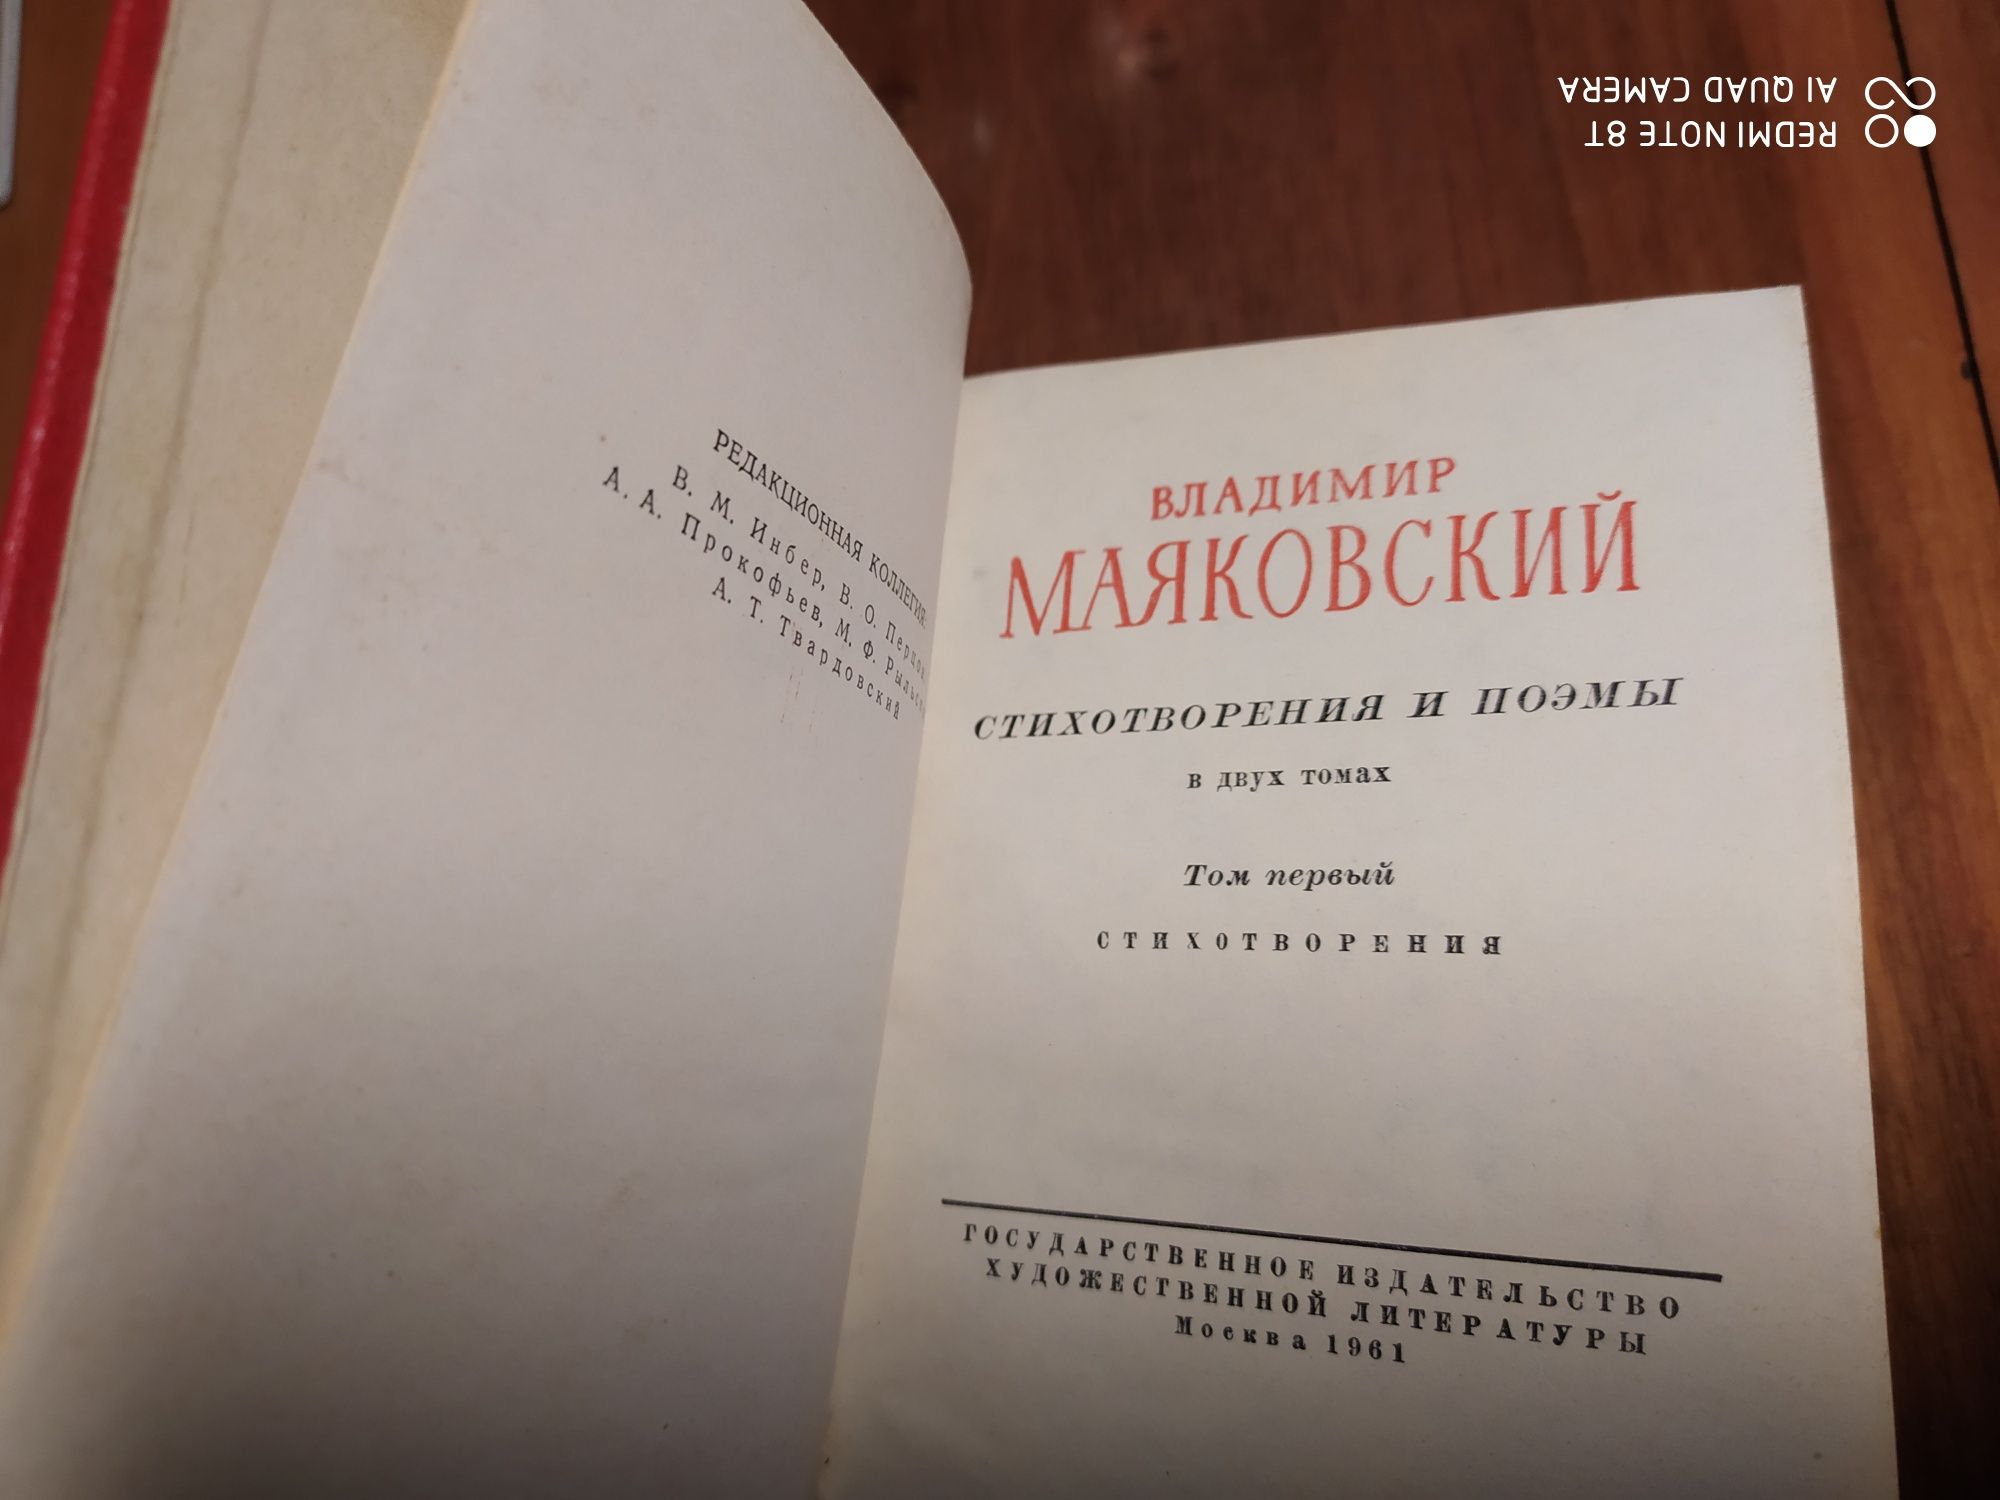 Библиотека советской поэзии. Маяковский Стихотворения и поэмы.